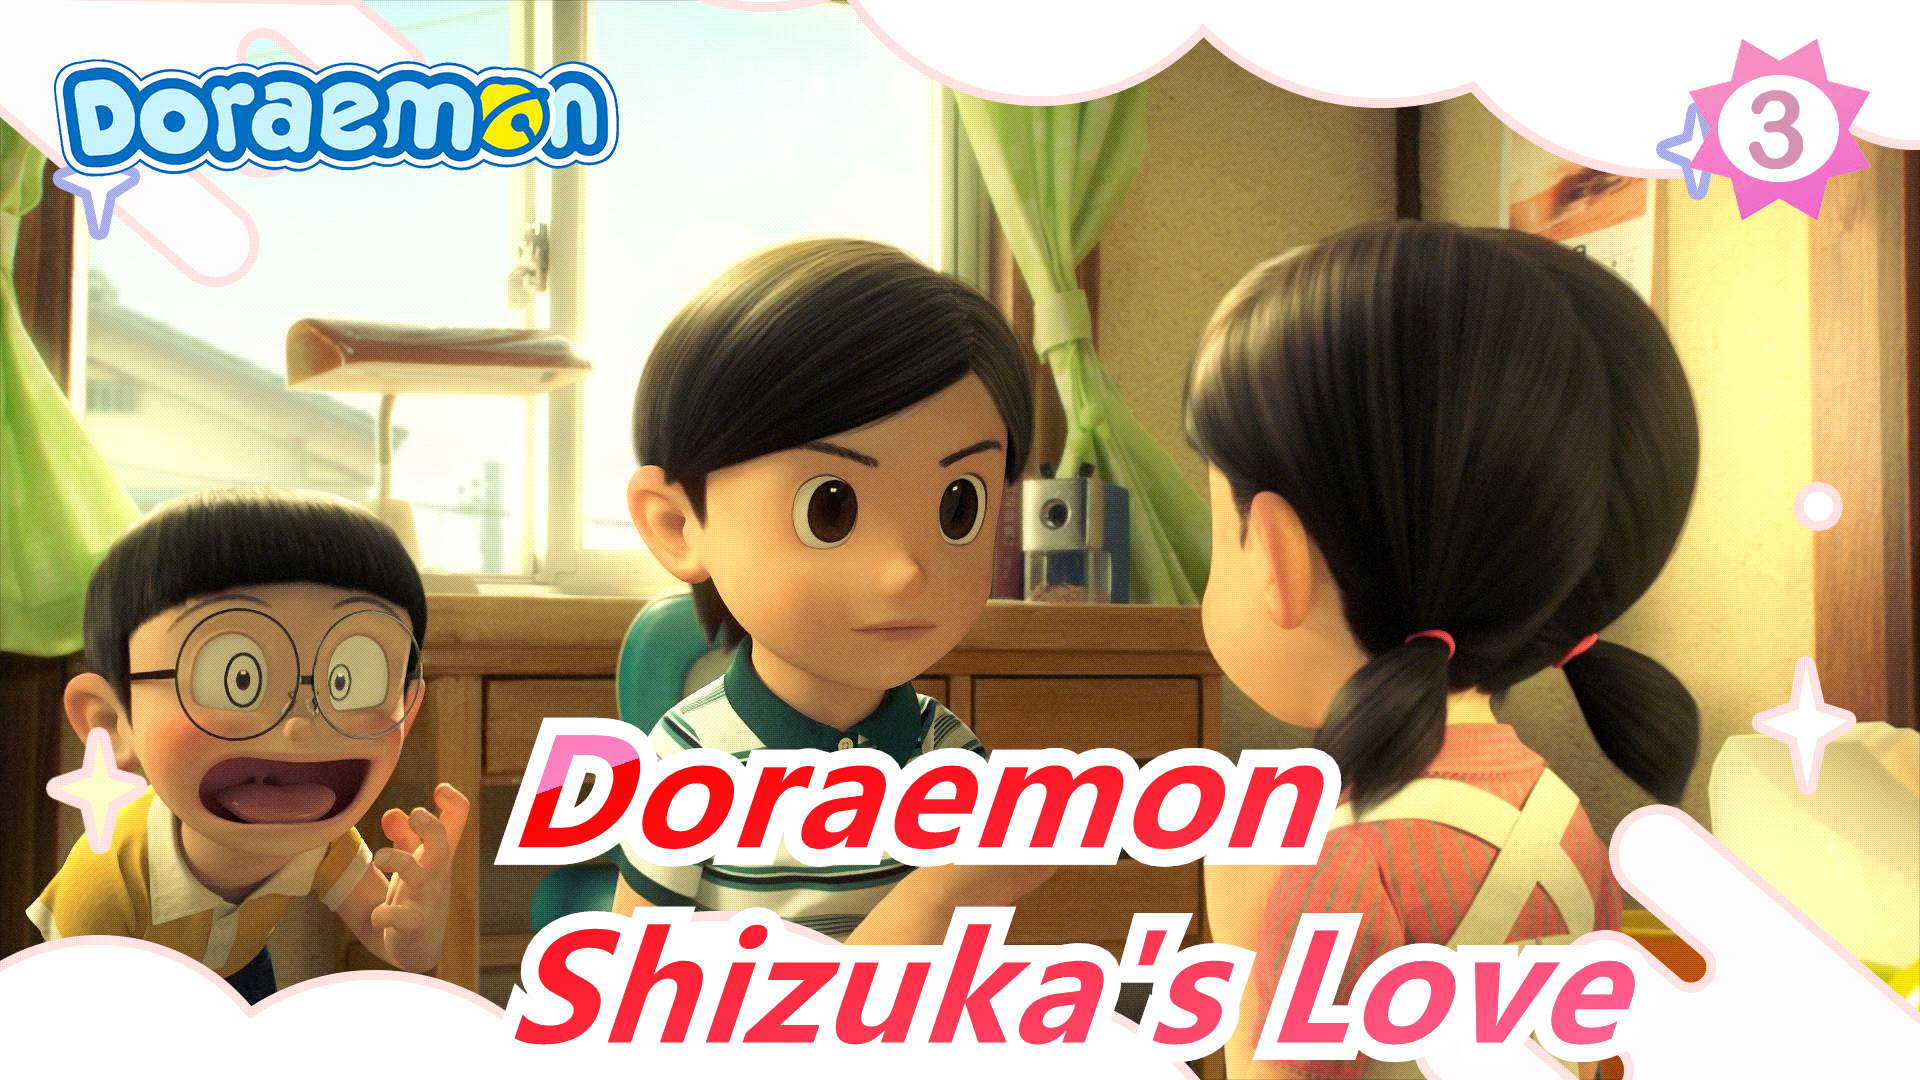 Doraemon] Shizuka's Love, It's So Sad_A3 - Bilibili